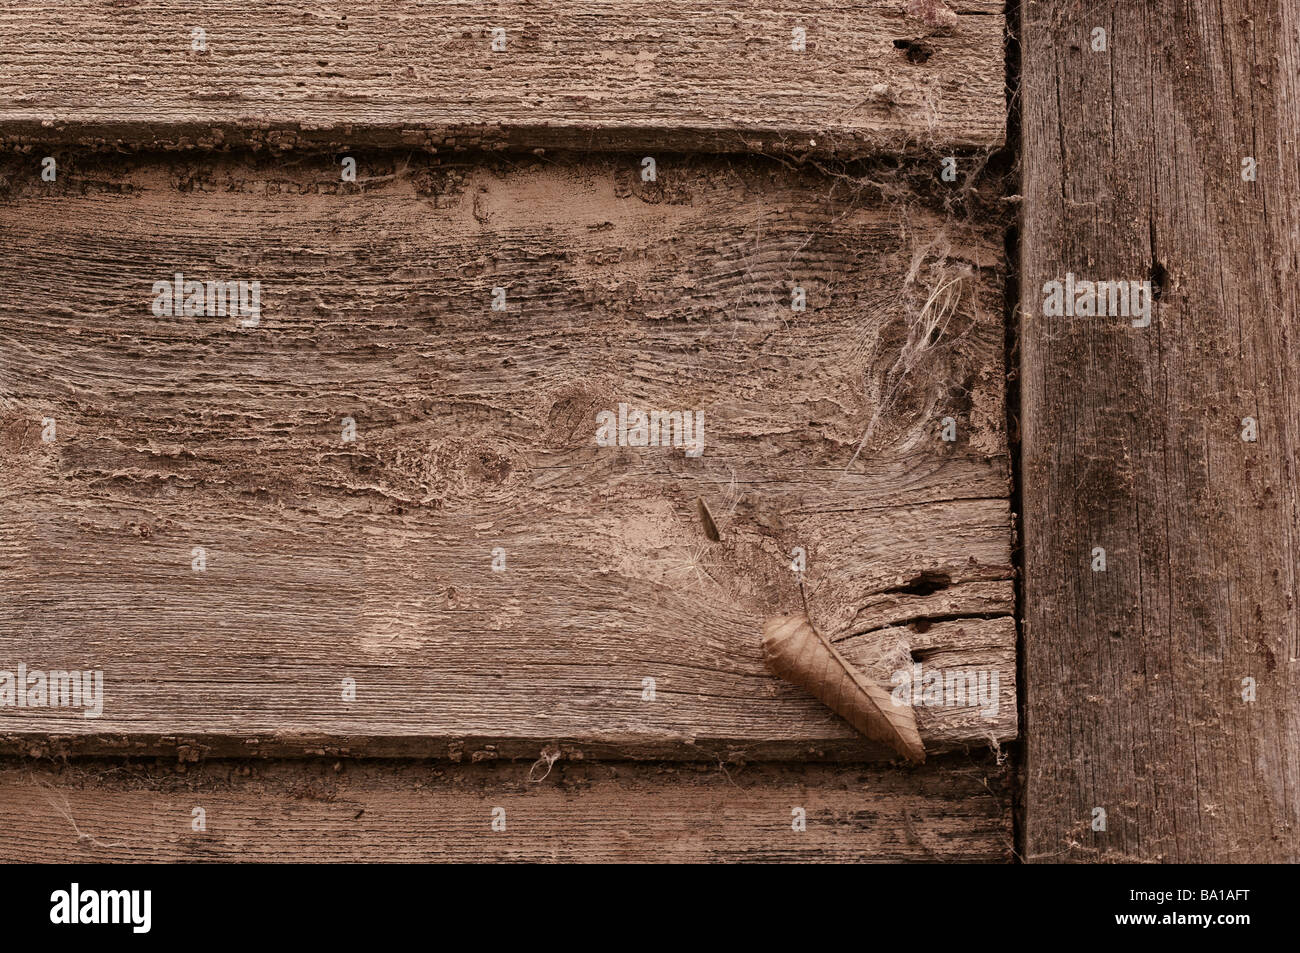 La texture de fond bois rough old grunge grungy sales retro vintage marquée d'une clôture de planches de bois patiné usé Banque D'Images